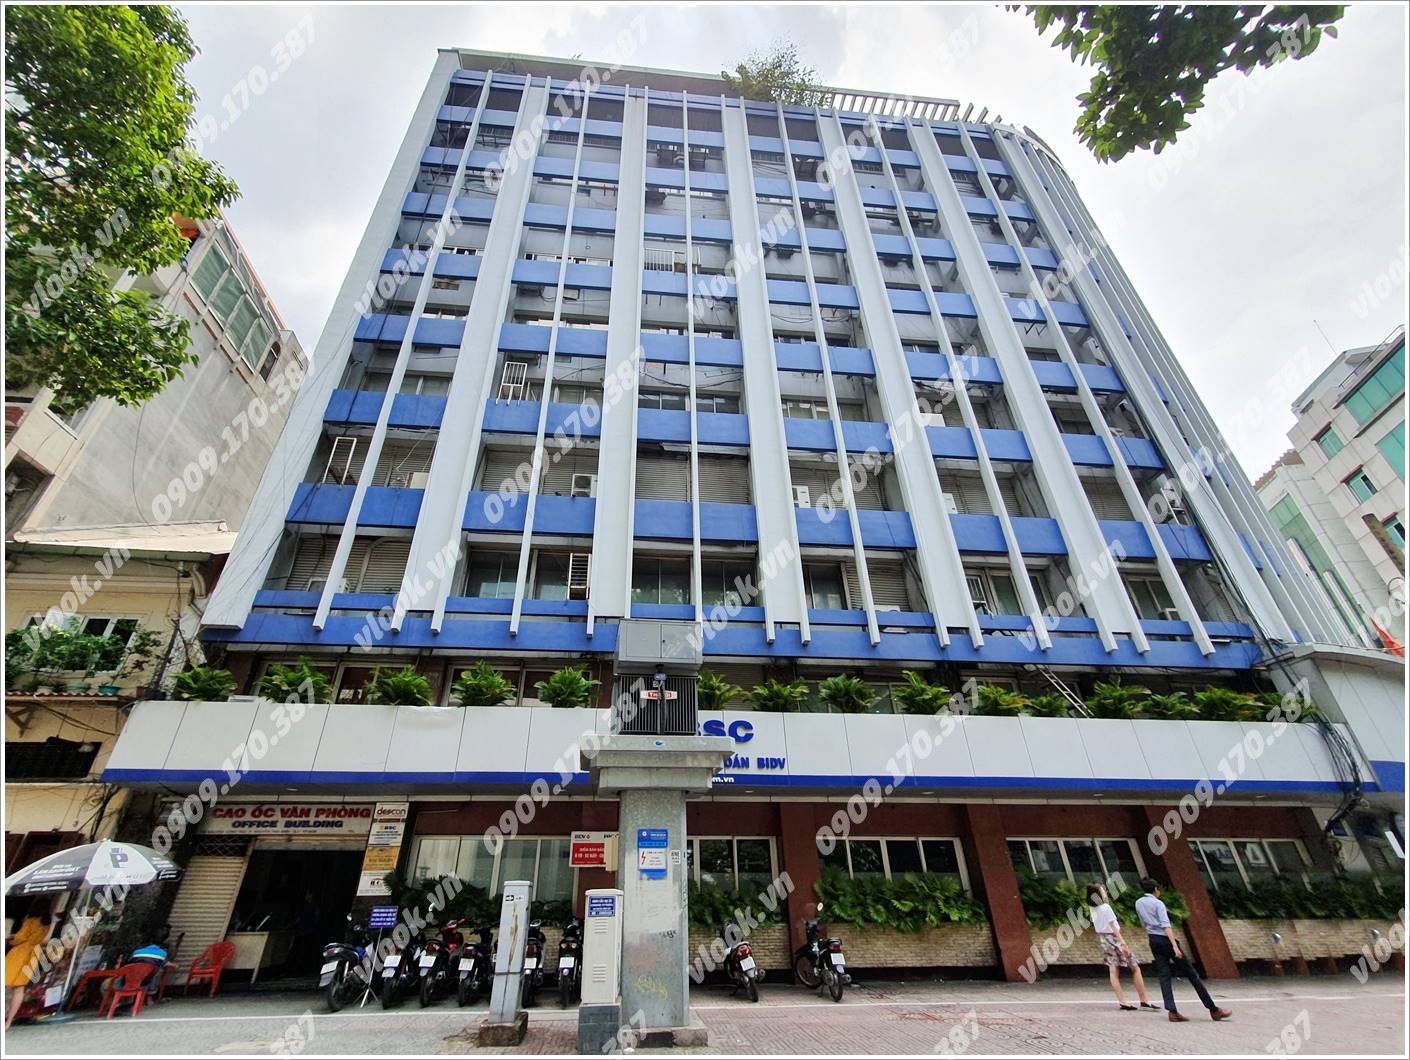 Cao ốc cho thuê văn phòng 146 NCT Office Building, Nguyễn Công Trứ, Quận 1, TPHCM - vlook.vn